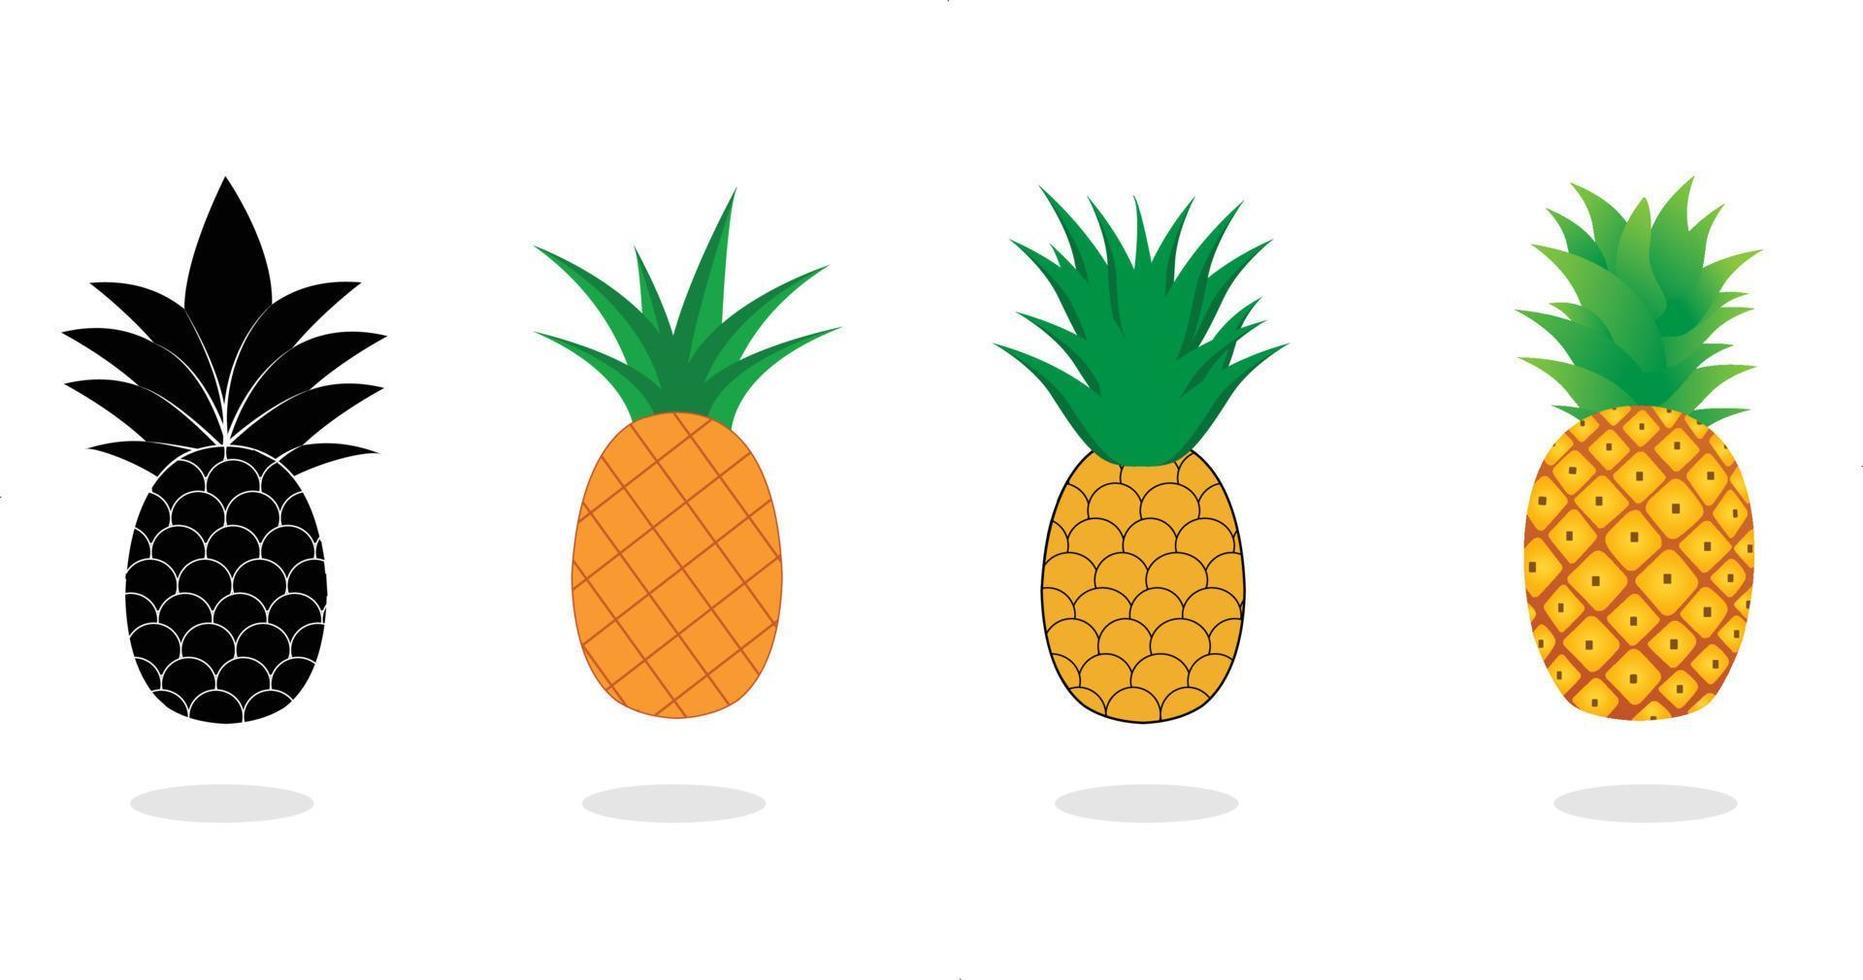 raccolta di ananas. illustrazione di frutta ananas con stile cartone animato isolato su sfondo bianco. frutta estiva, per una vita sana e naturale, illustrazione vettoriale. vettore